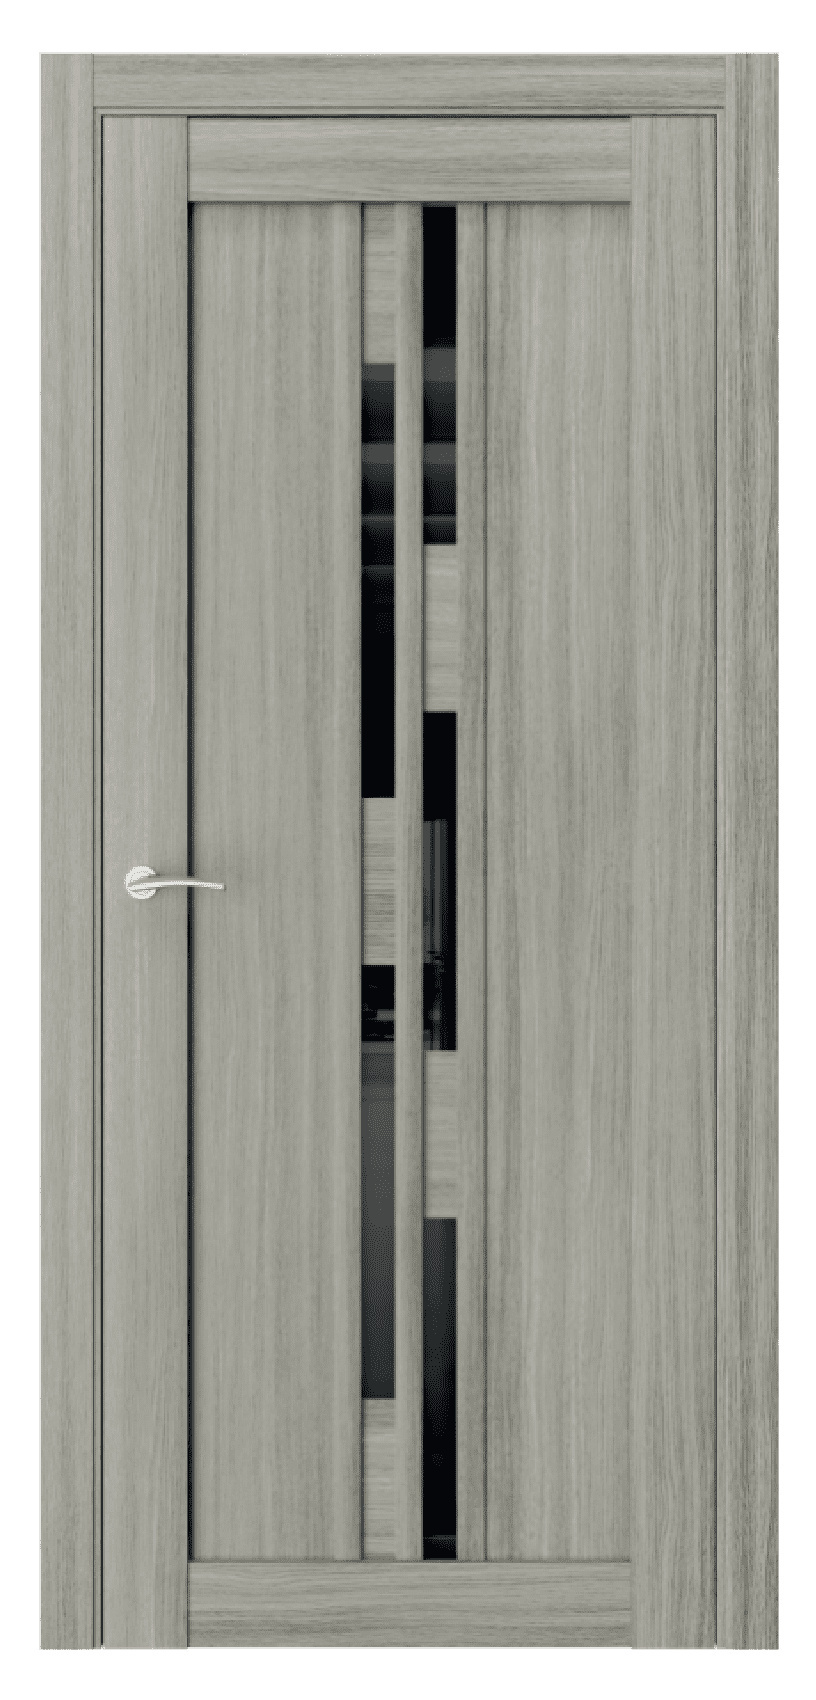 Questdoors Межкомнатная дверь Q41, арт. 17475 - фото №1